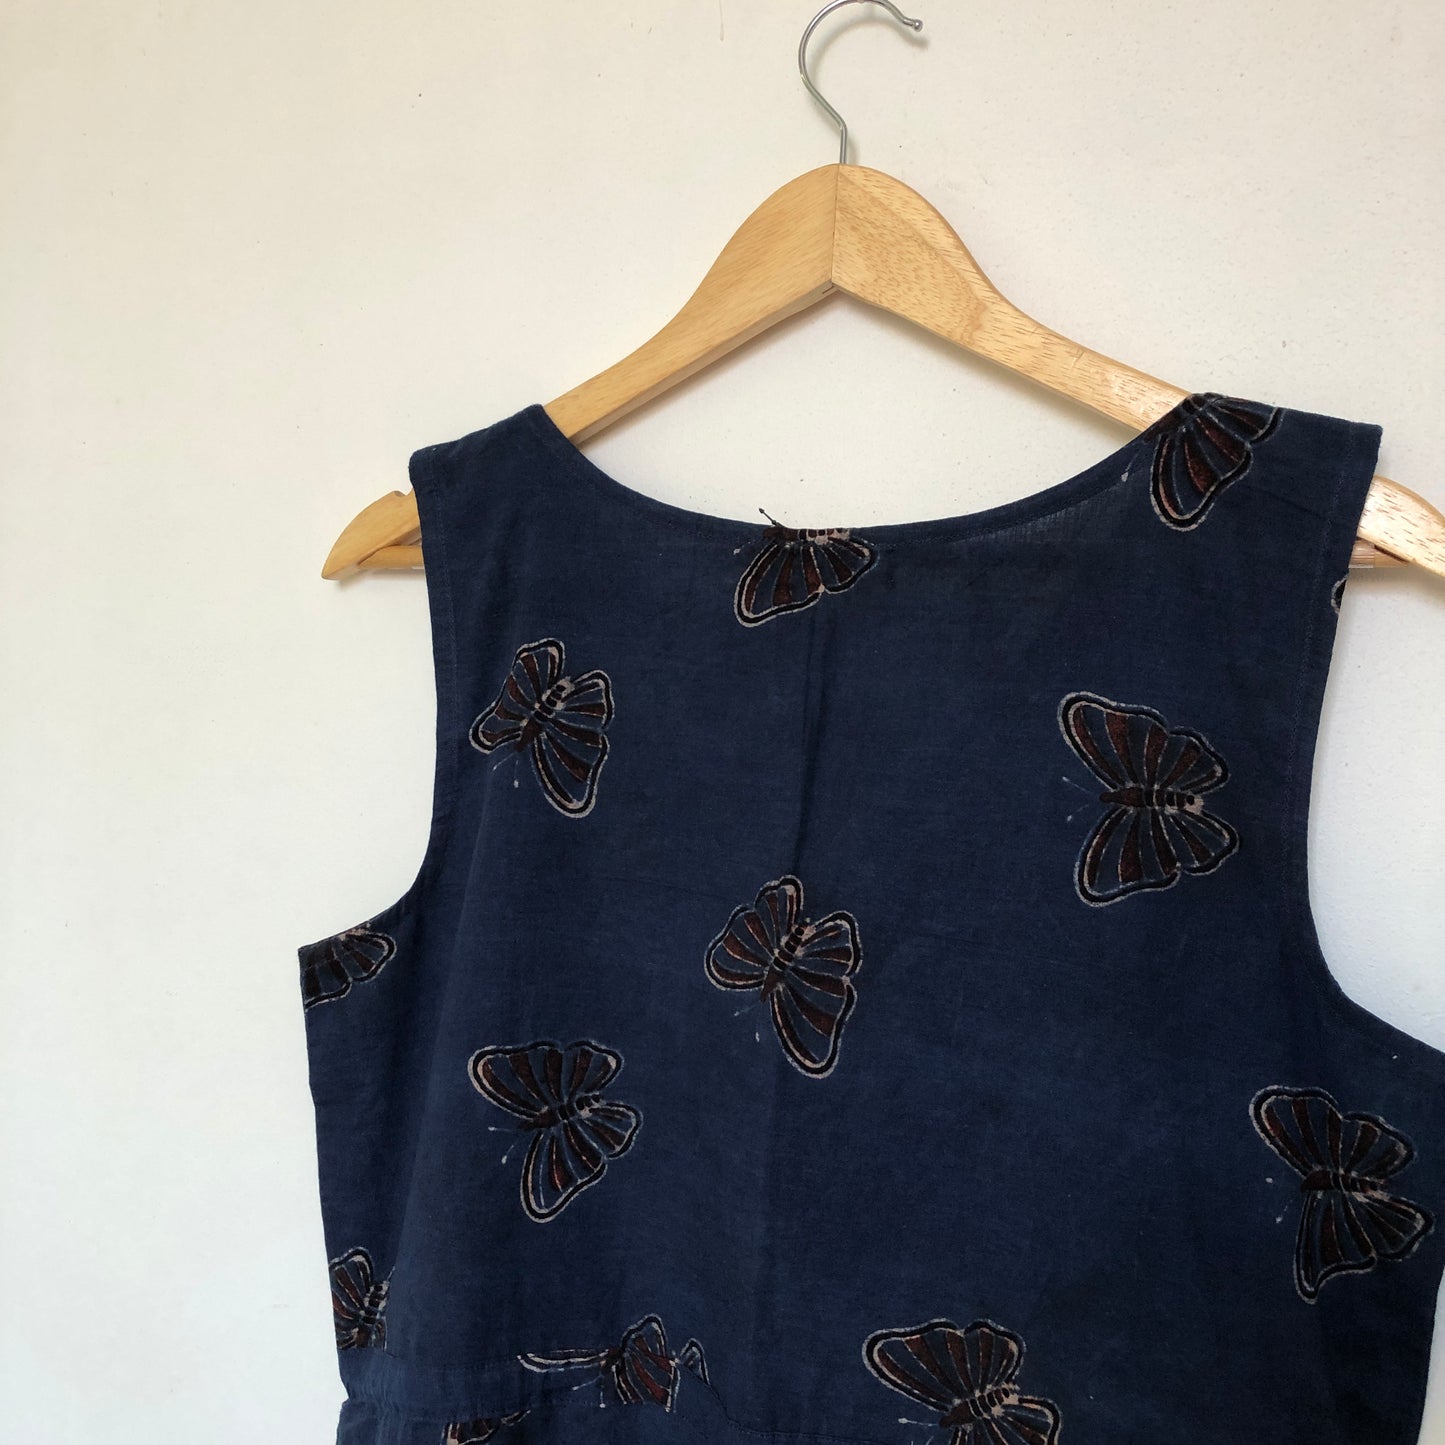 Butterfly dress in blue